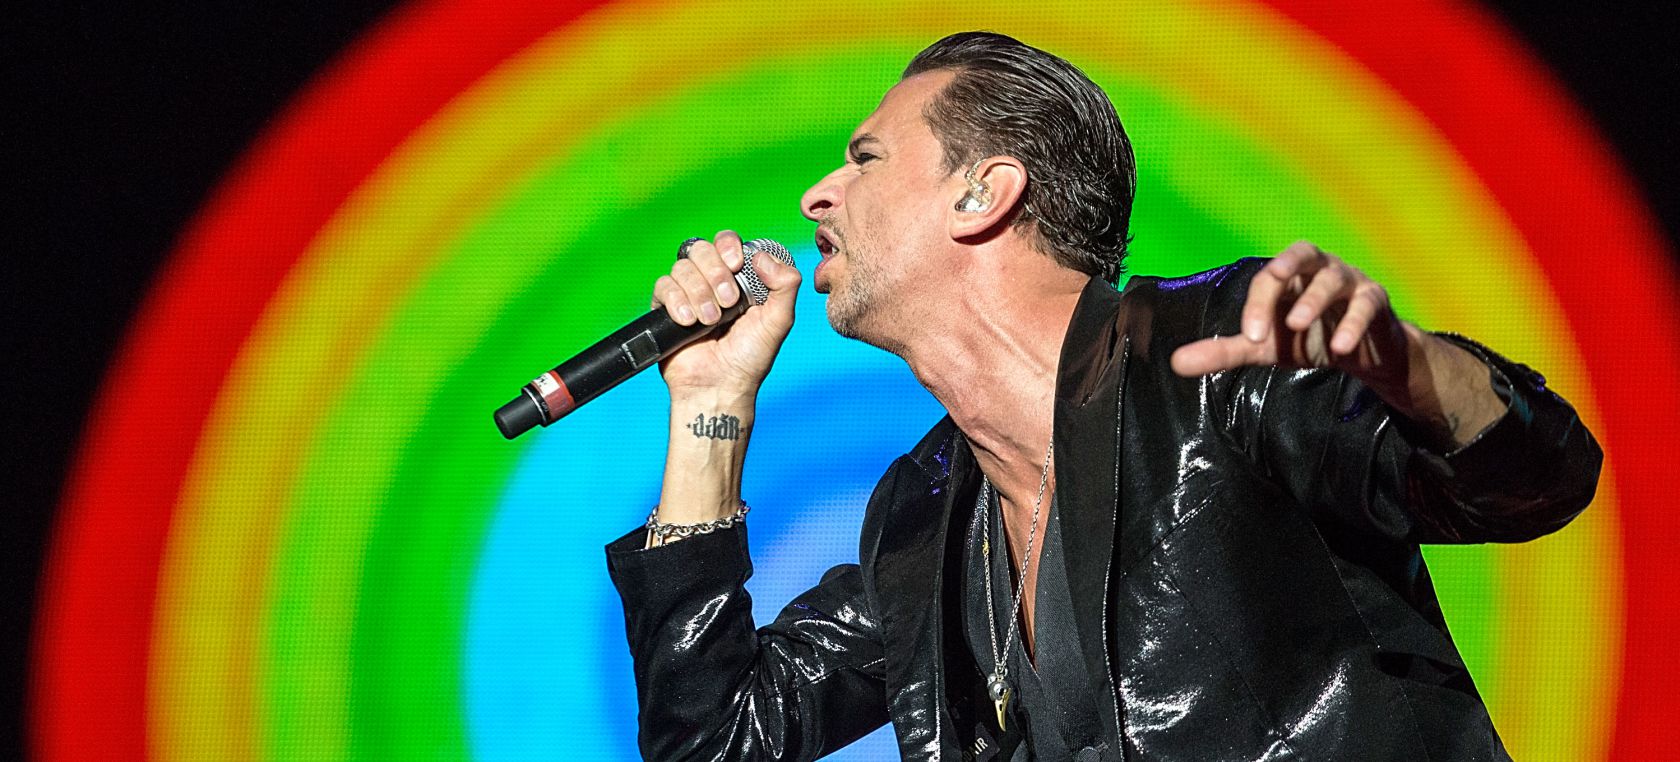 Cinco lecciones que hemos aprendido de Dave Gahan, la voz de Depeche Mode, en su cumpleaños